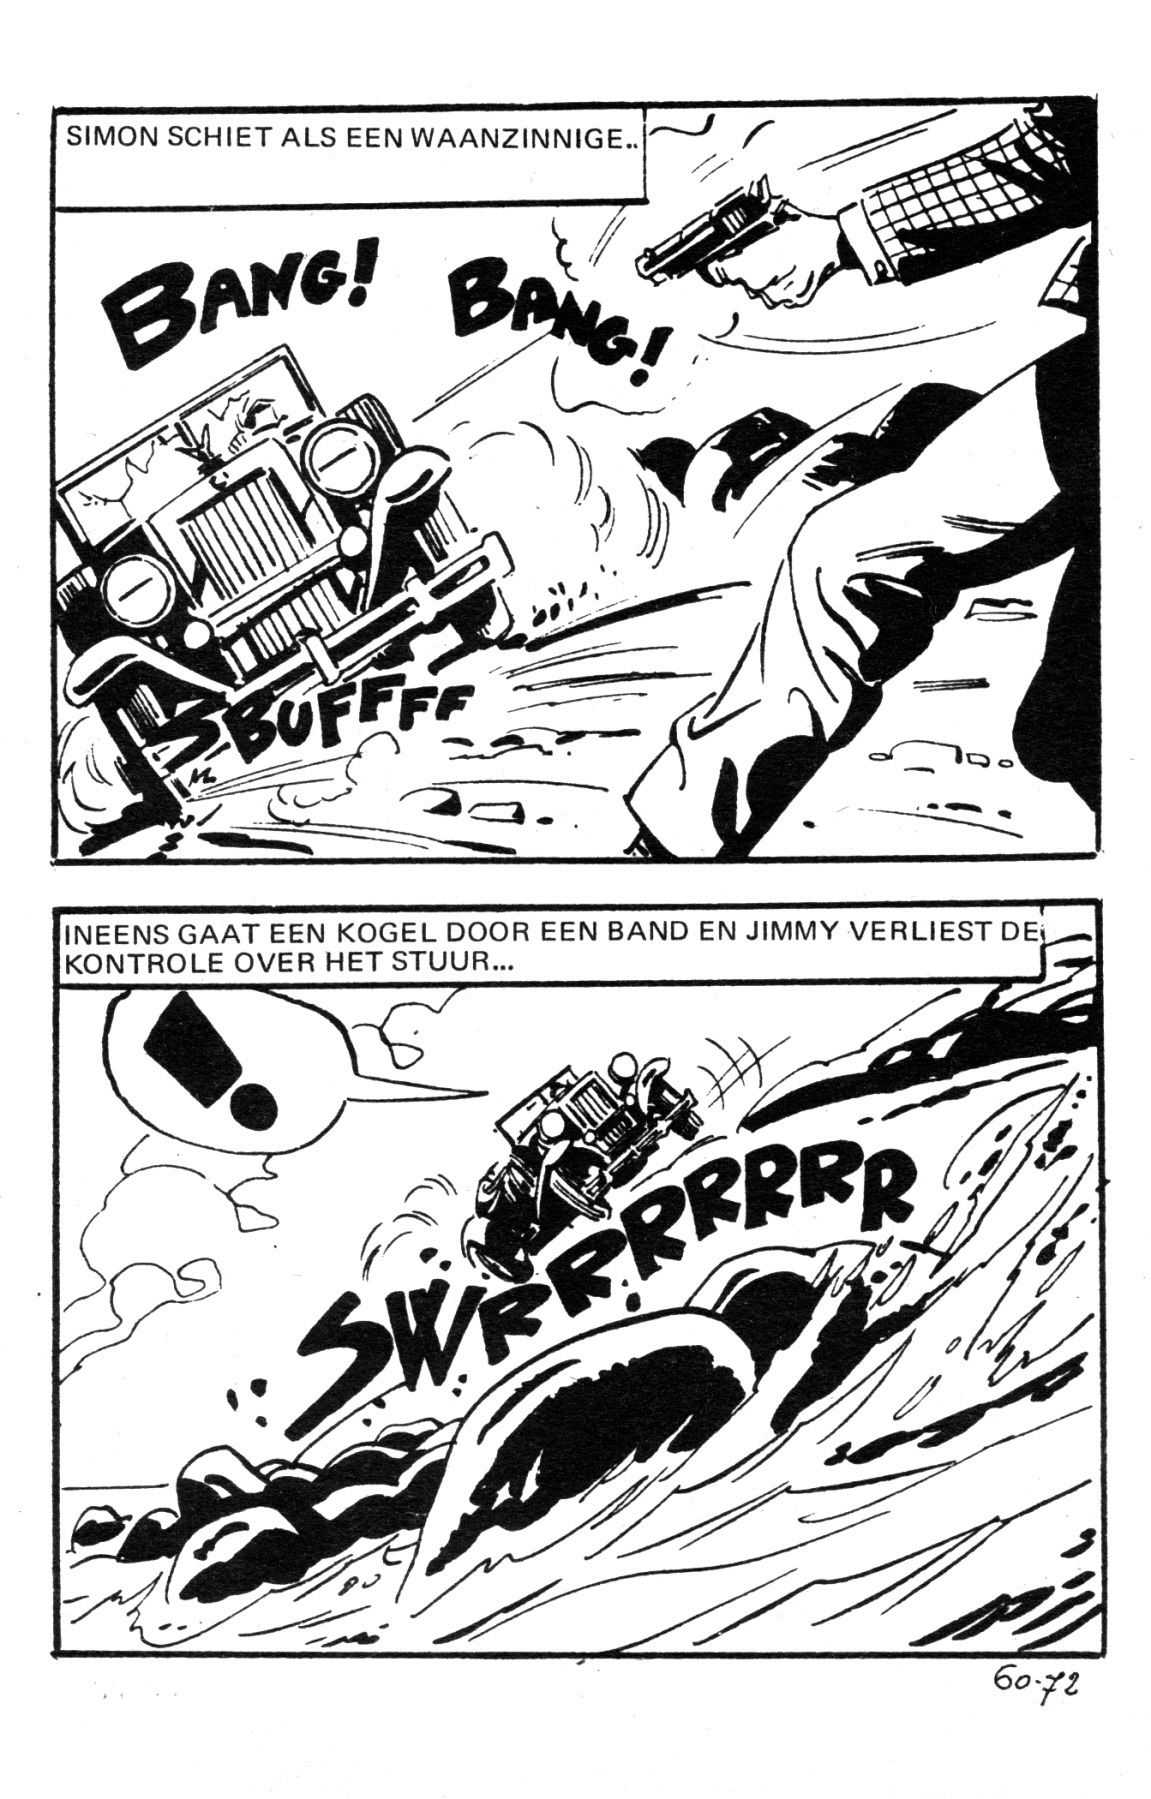 Wallestein Het Monster - 051 - Het Derde Slachtoffer (Dutch) In 9 series...meer dan 90 strips uit de "Wallestein" serie! 75